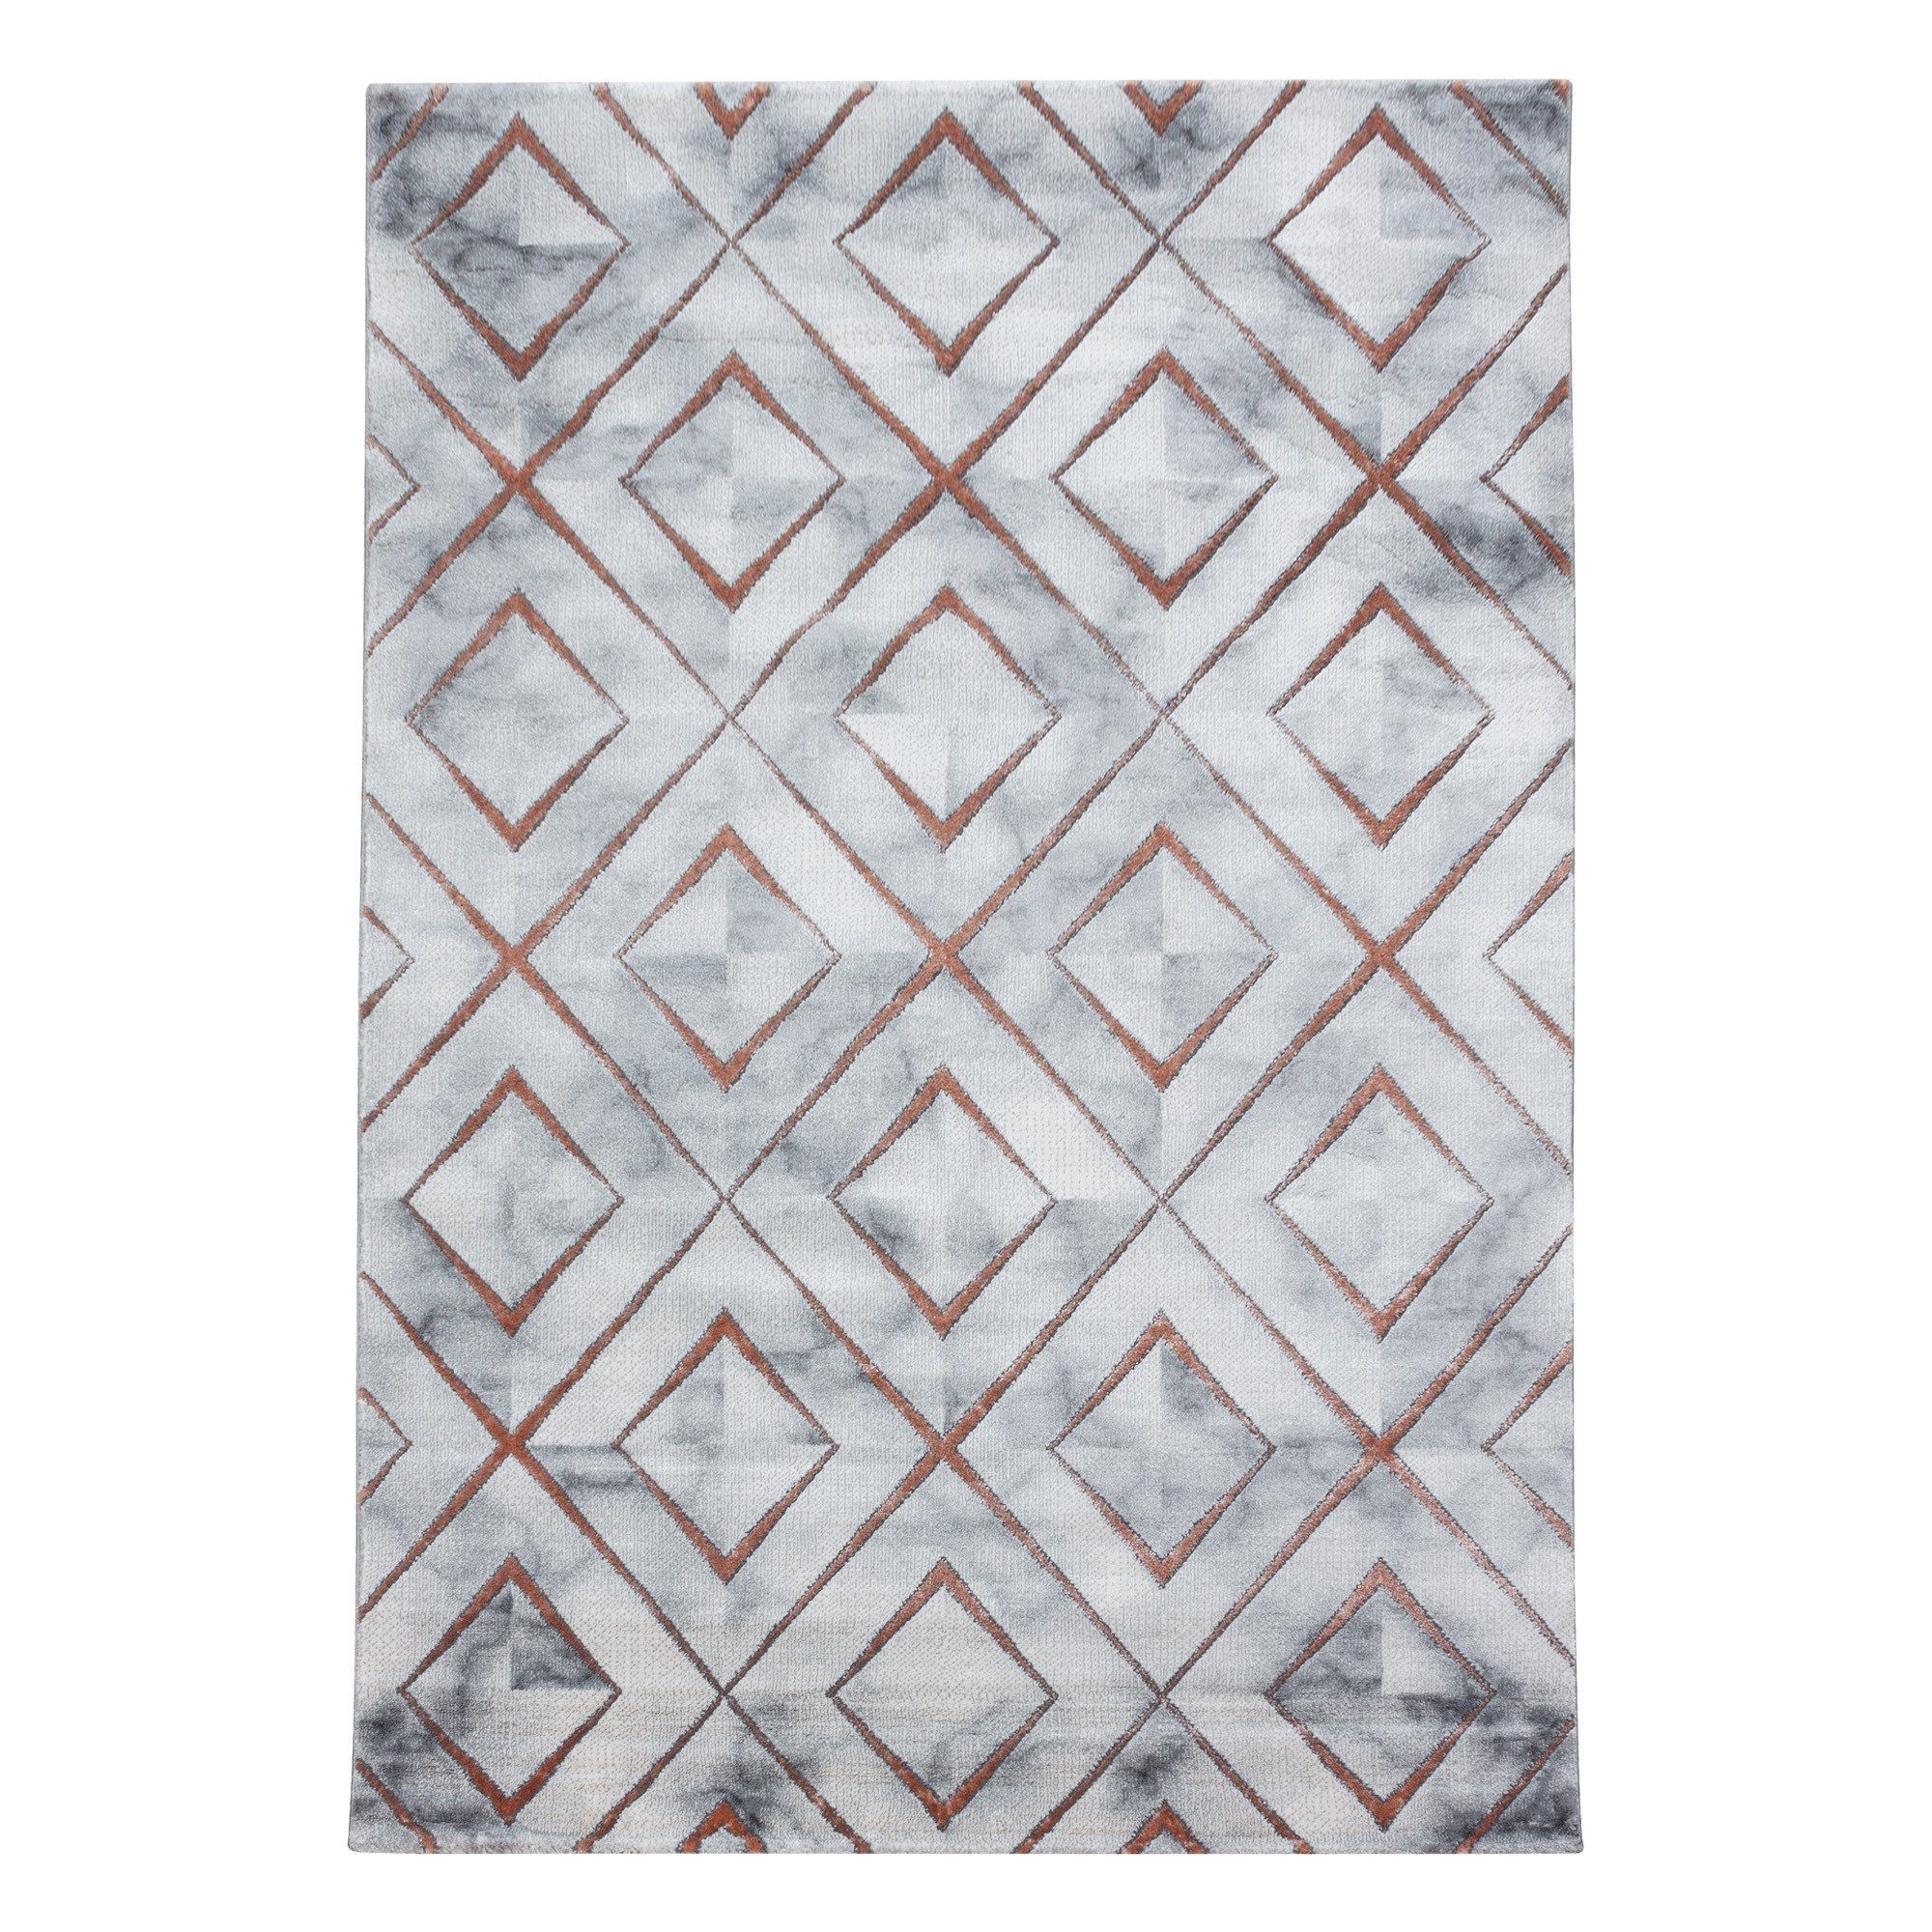 Muster, Flachflorteppich Bronze Kurzflorteppich Wohnzimmer Marmoroptik Miovani Designteppich